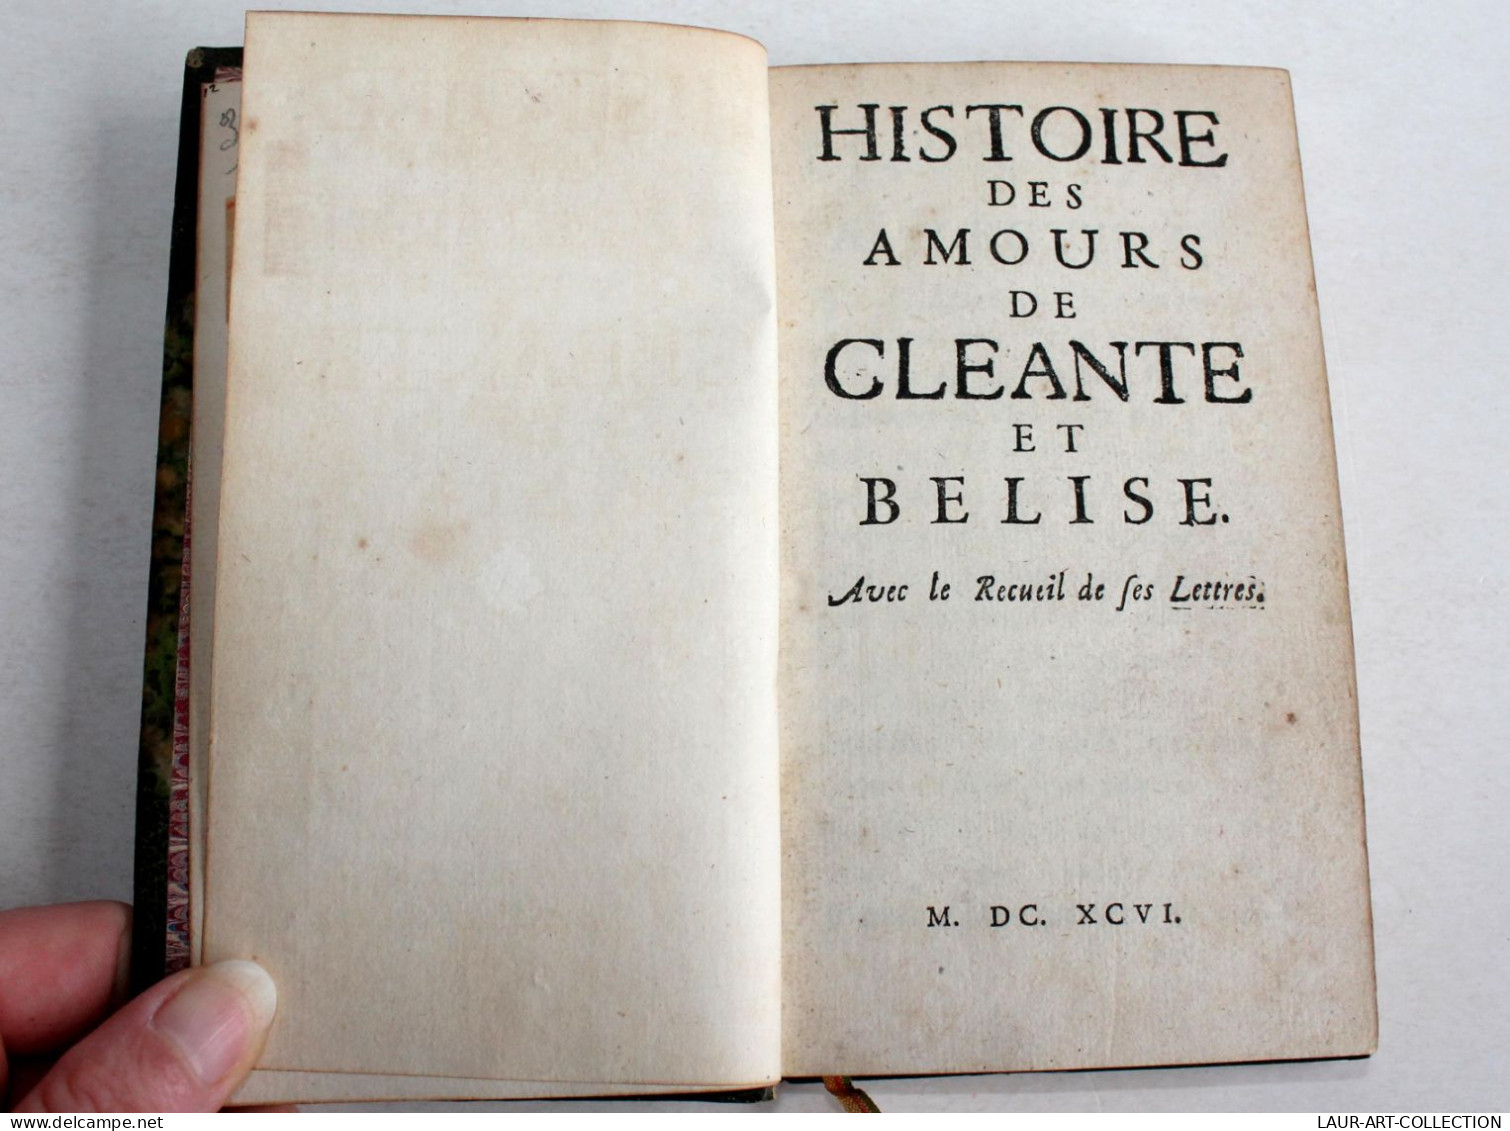 INTROUVABLE! HISTOIRE DES AMOURS DE CLEANTE Et BELISE + RECUEIL DES LETTRES 1696 / ANCIEN LIVRE XVIIe SIECLE (2603.33) - Jusque 1700